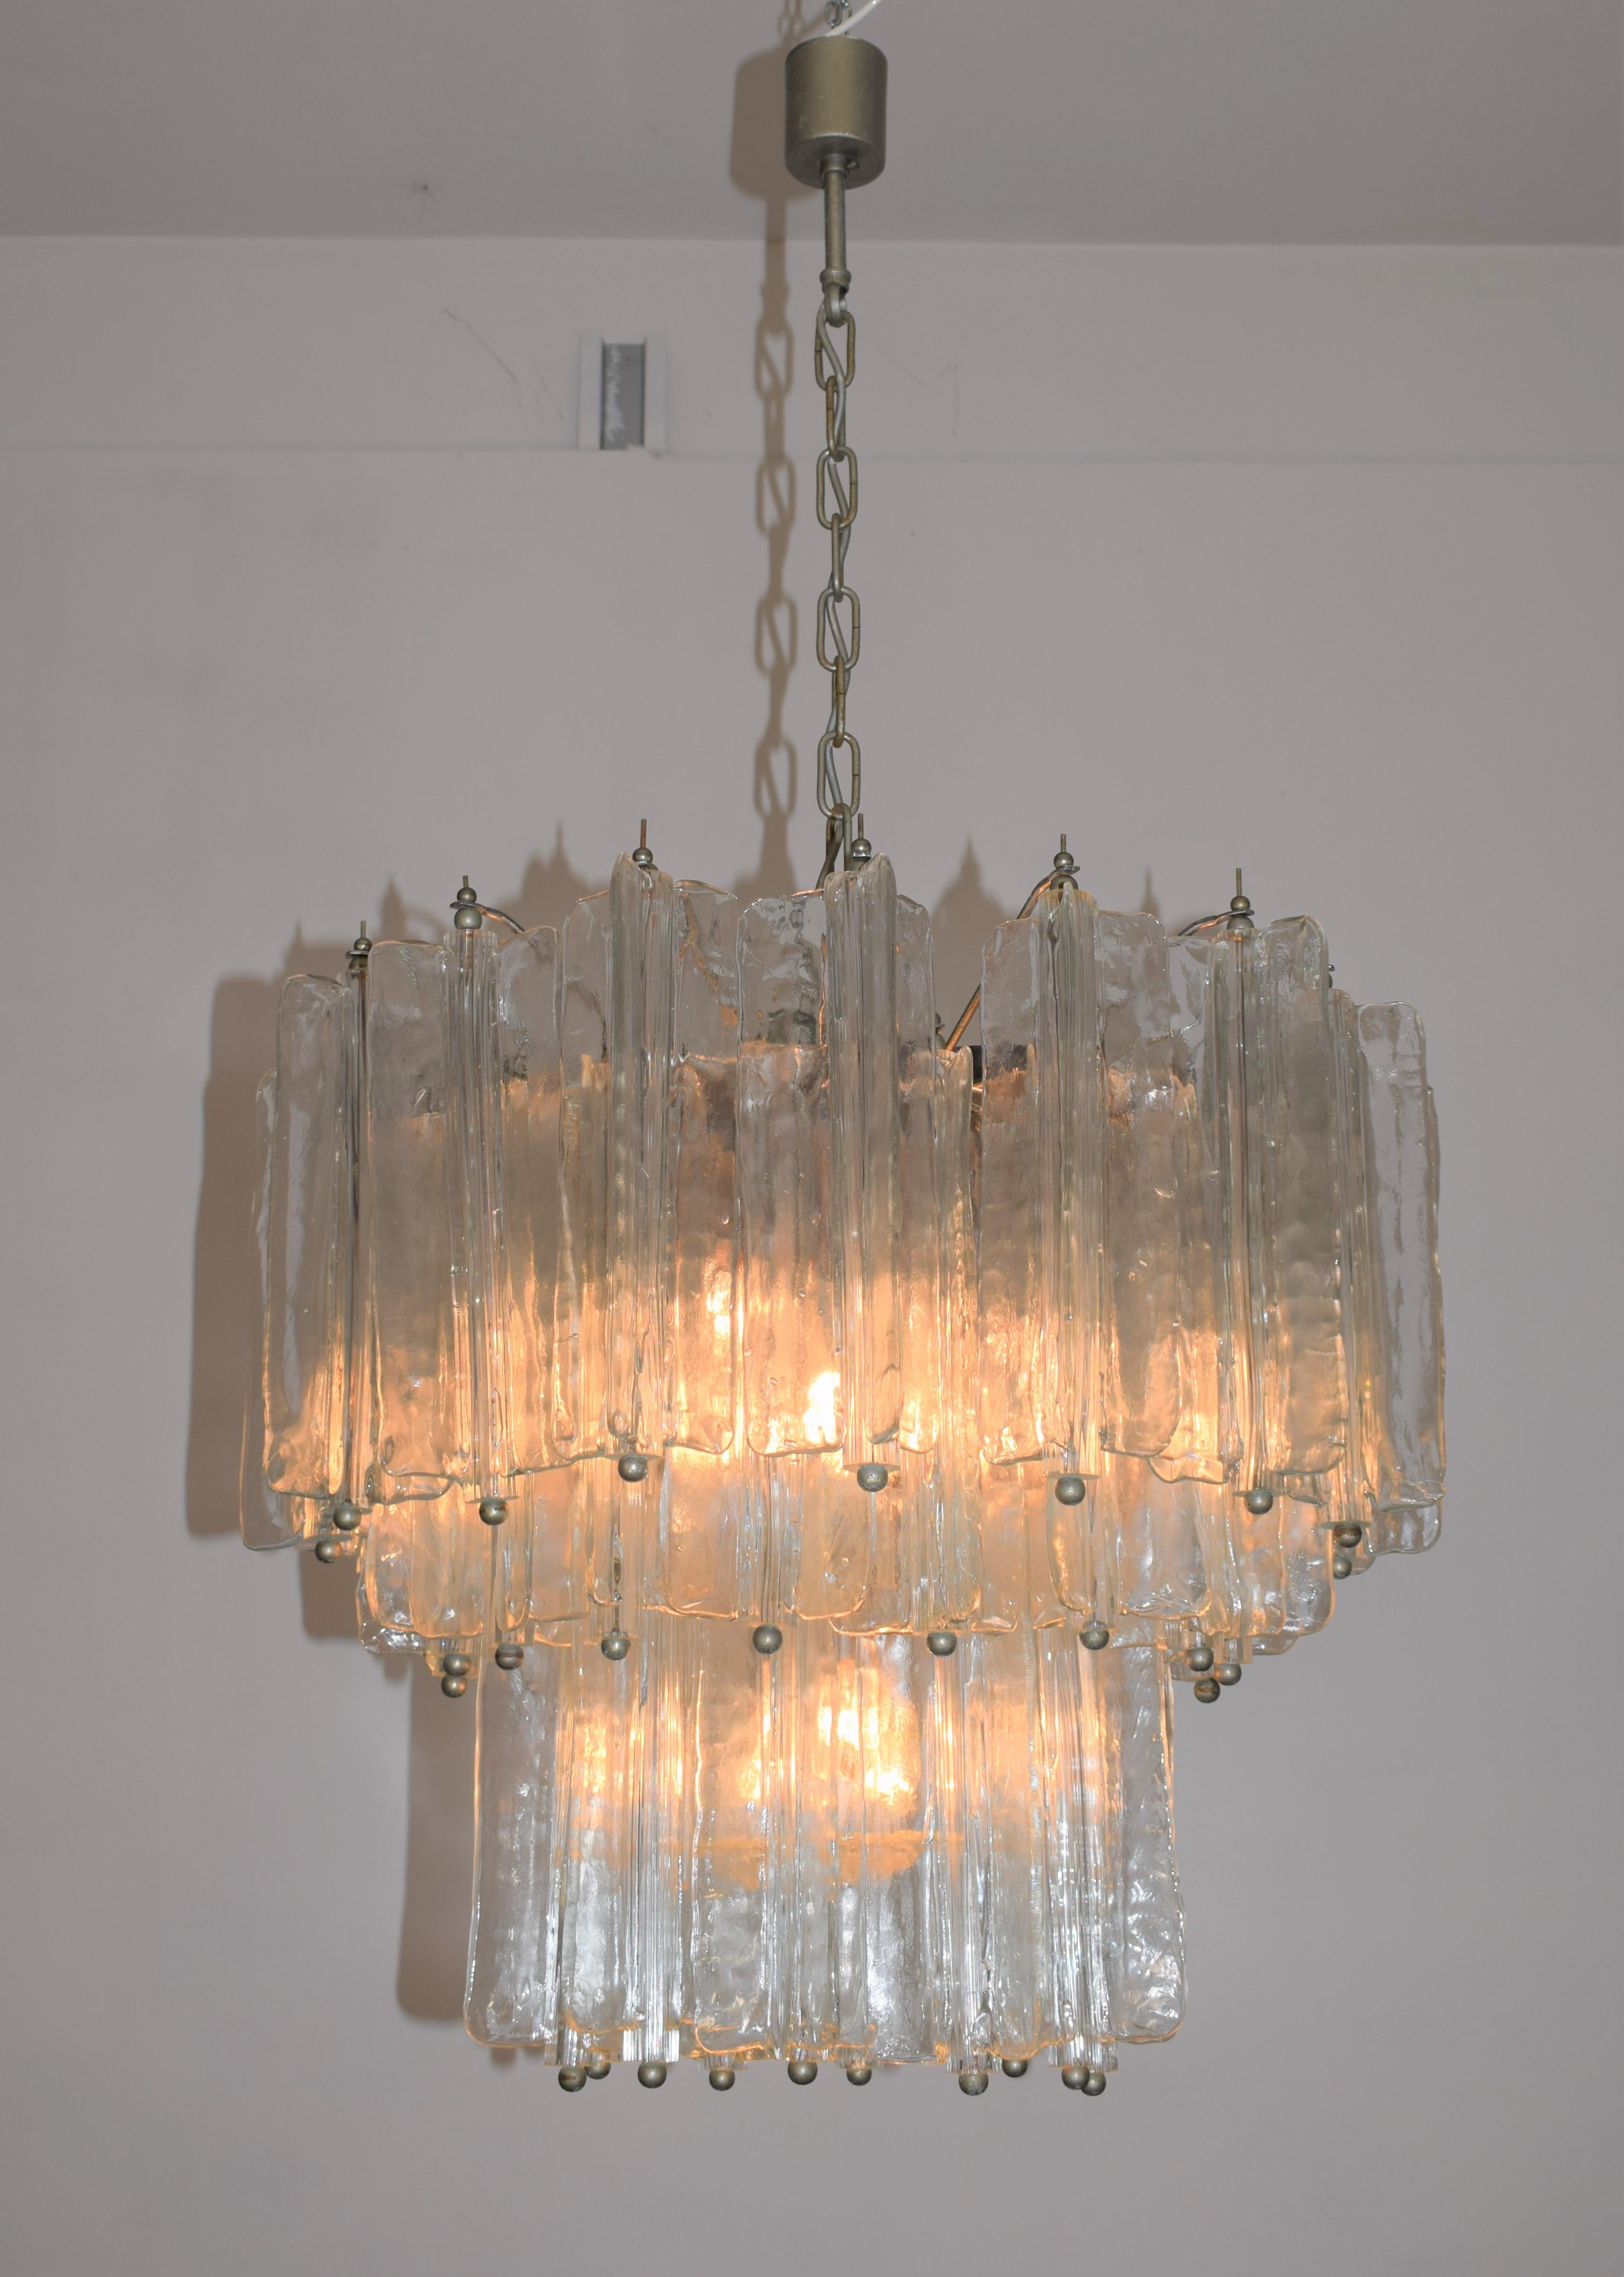 Italian chandelier by Toni Zuccheri for Venini Murano, 1960s.

Dimensions: H= 120 cm; D= 65 cm.